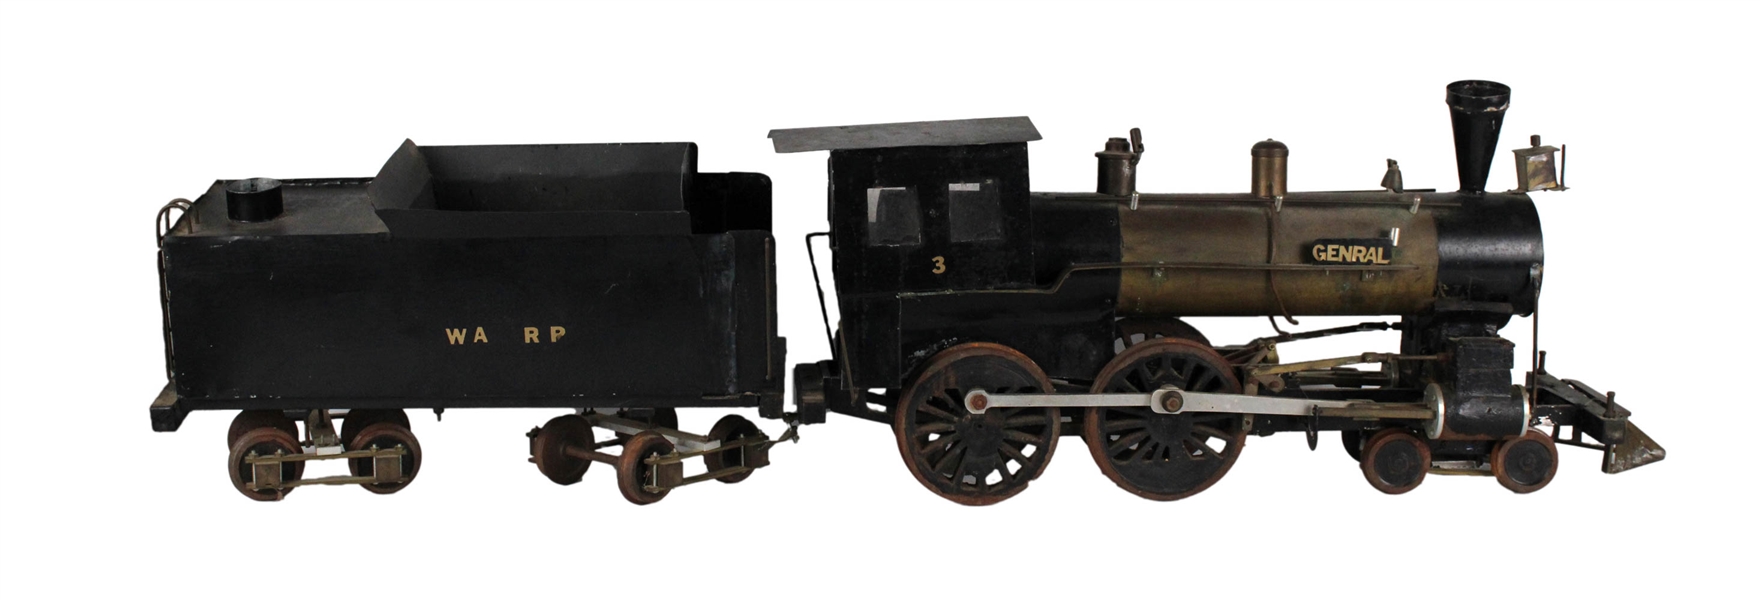 Large Gauge Model Locomotive